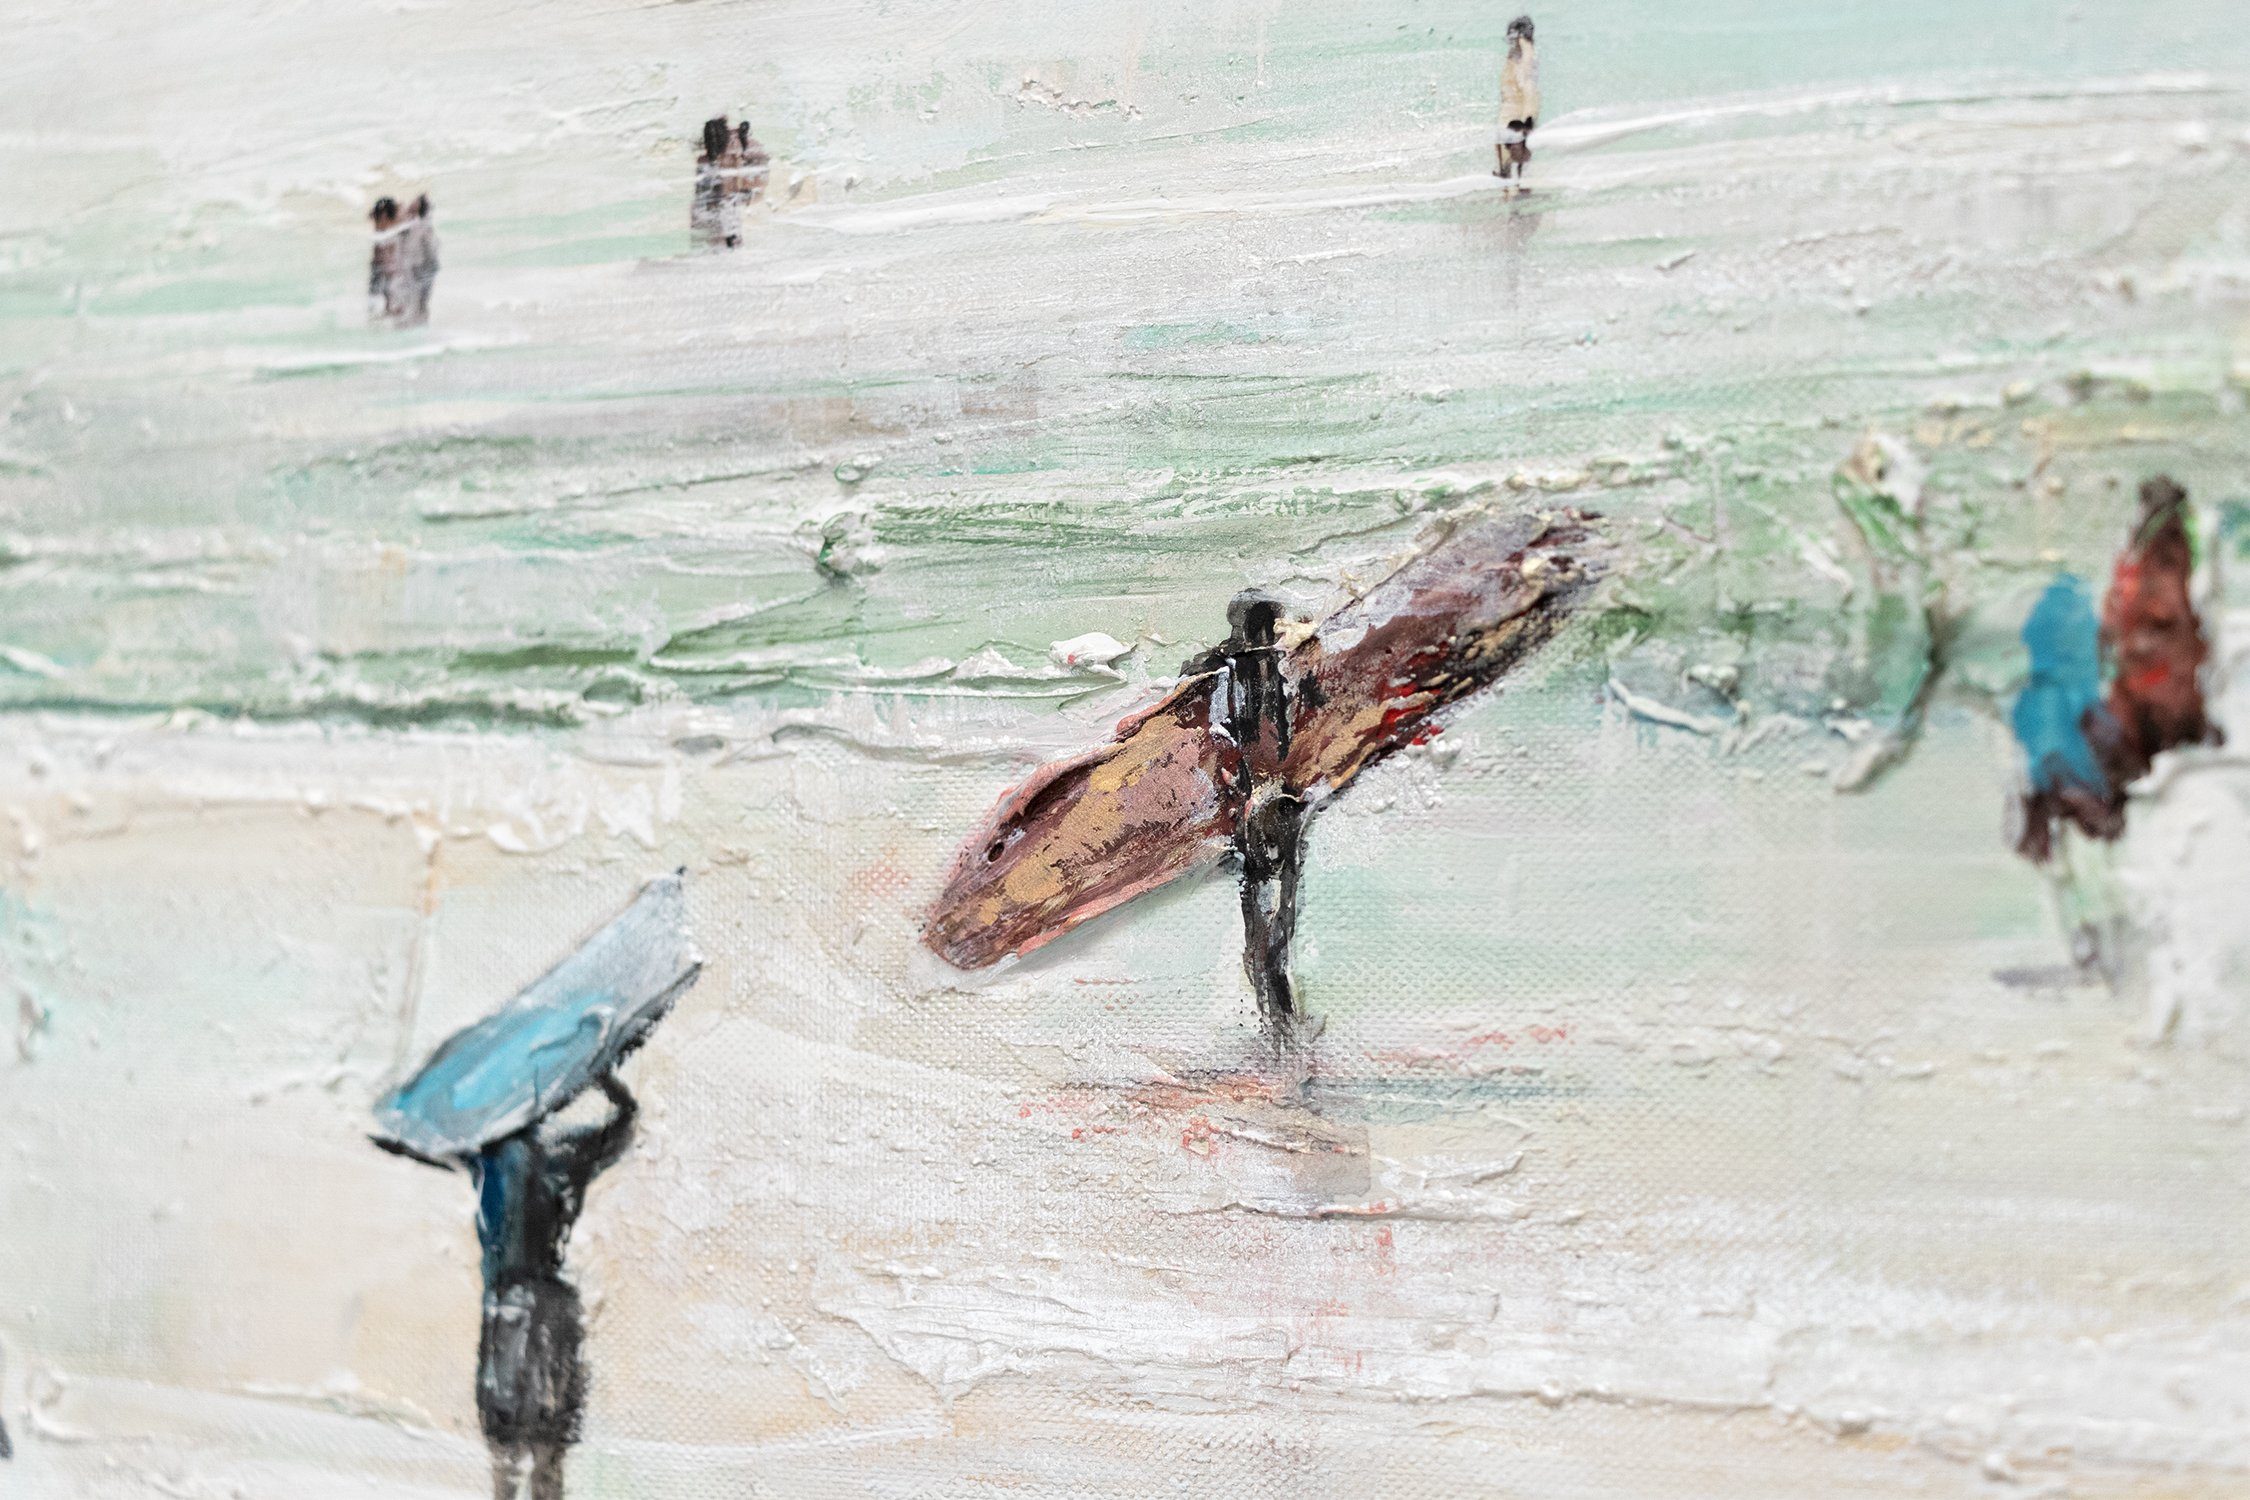 Surfen Gemälde Wellenreiten, Bild YS-Art Rahmen Wasser Leinwand Meer Handgemalt mit Wellen